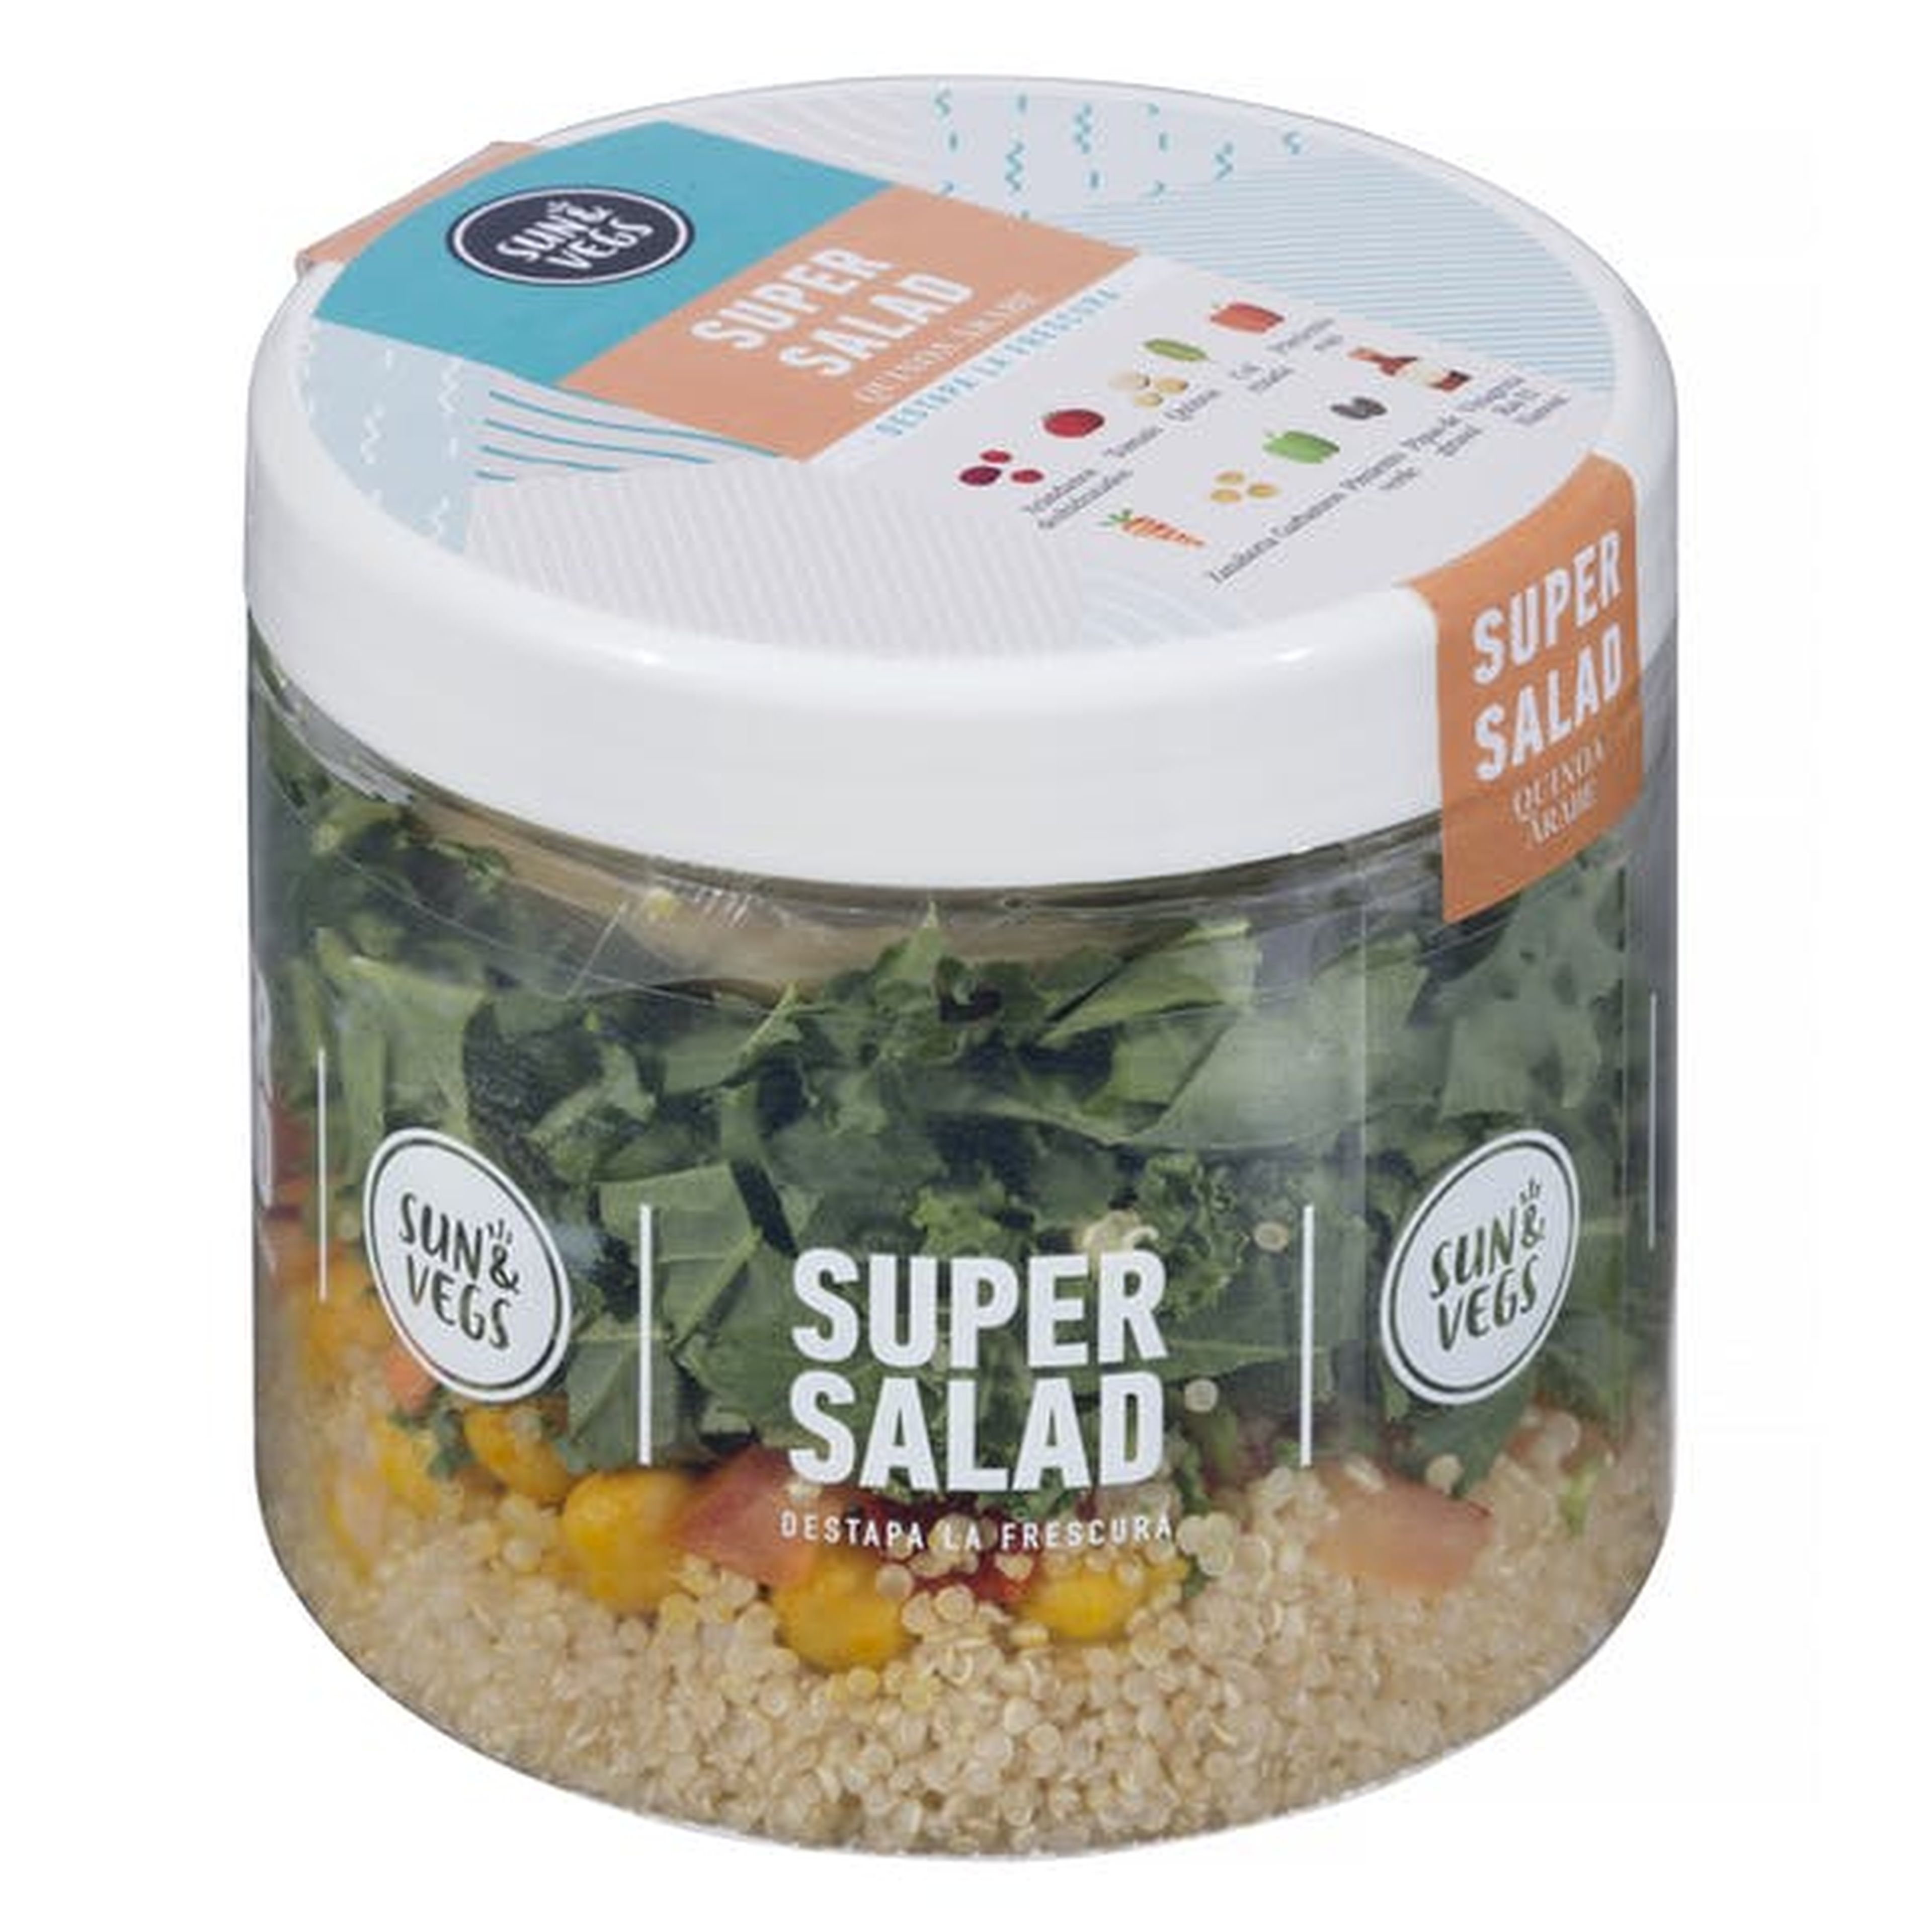 Supersalad quinoa Mercadona